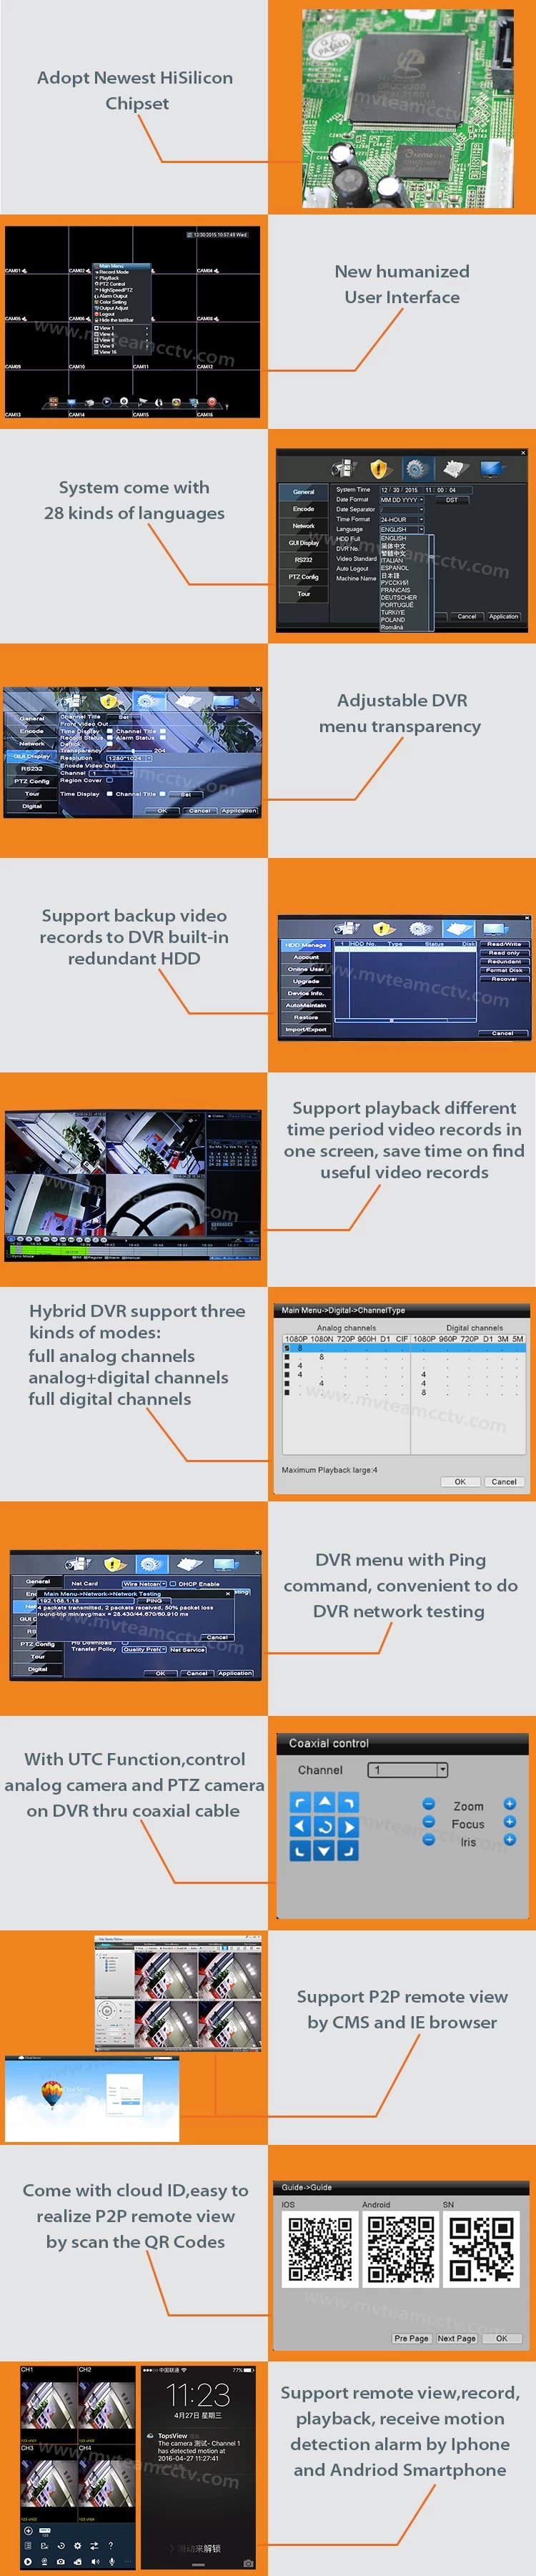 32CH 1080N AHD CVBS IP 3-in-1 Hybrid DVR CCTV Recorder( 62B32H80P)